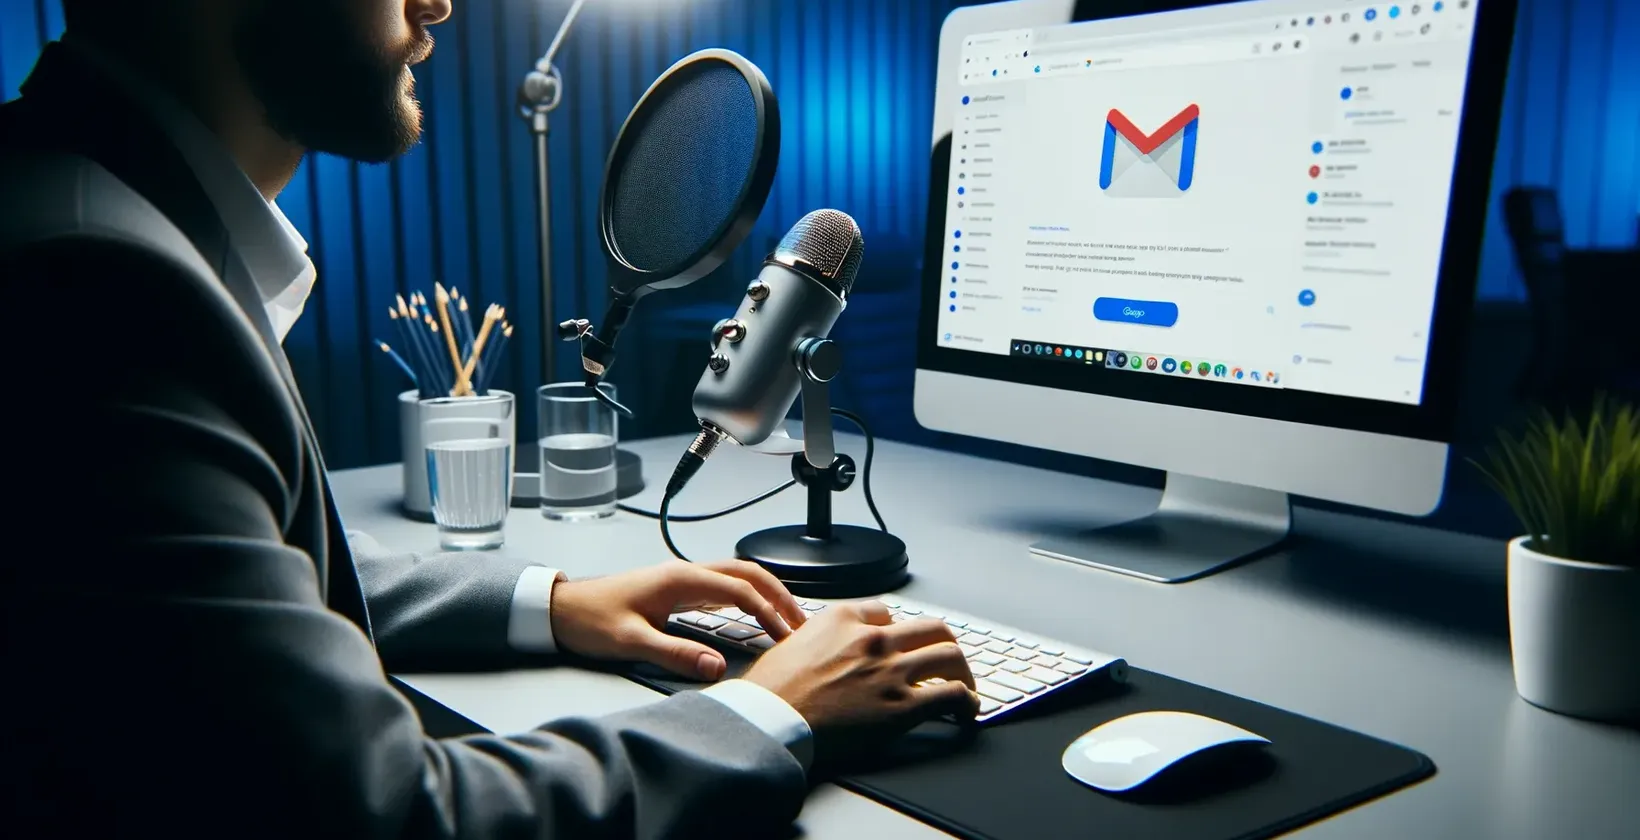 En mand står foran en computermikrofon og gør klar til at diktere en e-mail med Gmail åben på skærmen.